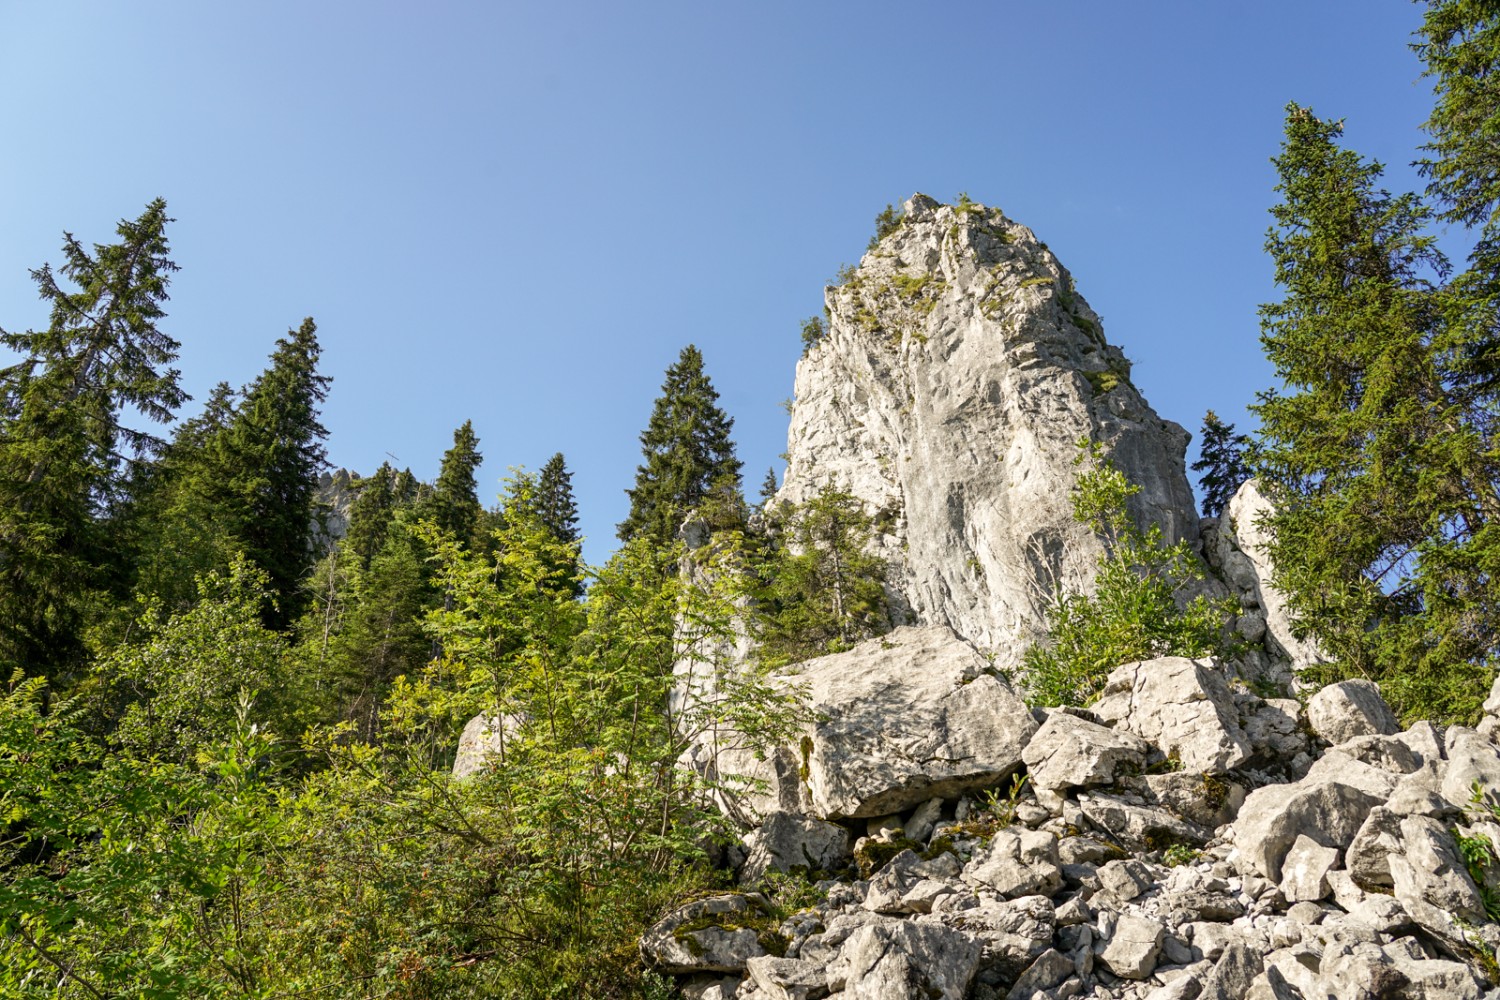 Le Chli Schijen, l’une des étonnantes klippes de Schwyz. Photo: Reto Wissmann

